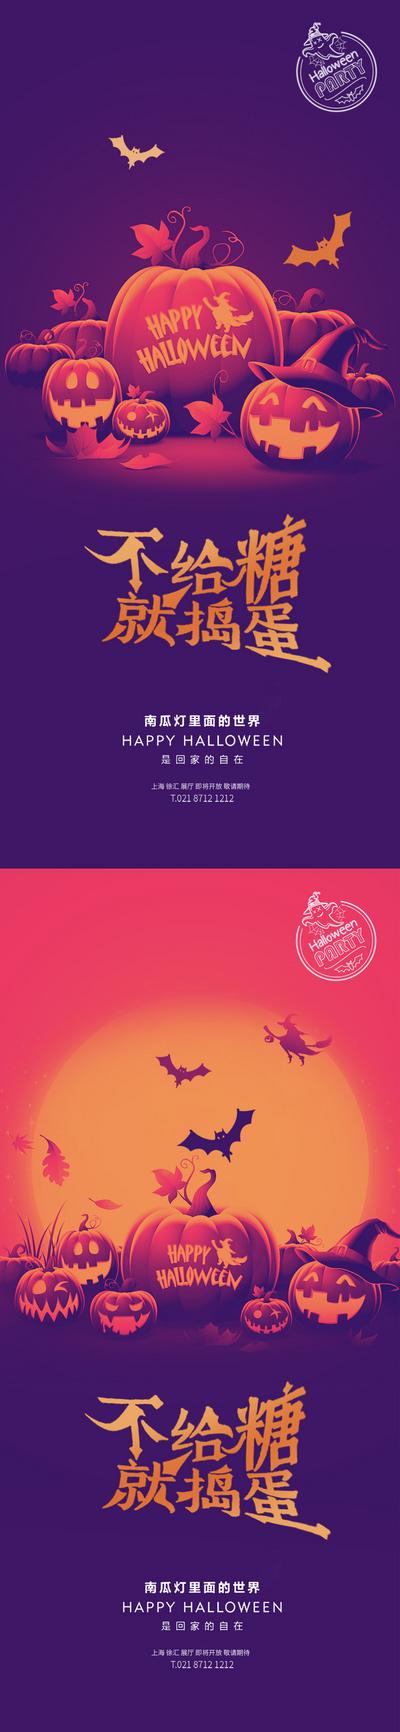 南门网 海报 公历节日 西方节日 万圣节 南瓜 蝙蝠 创意 系列